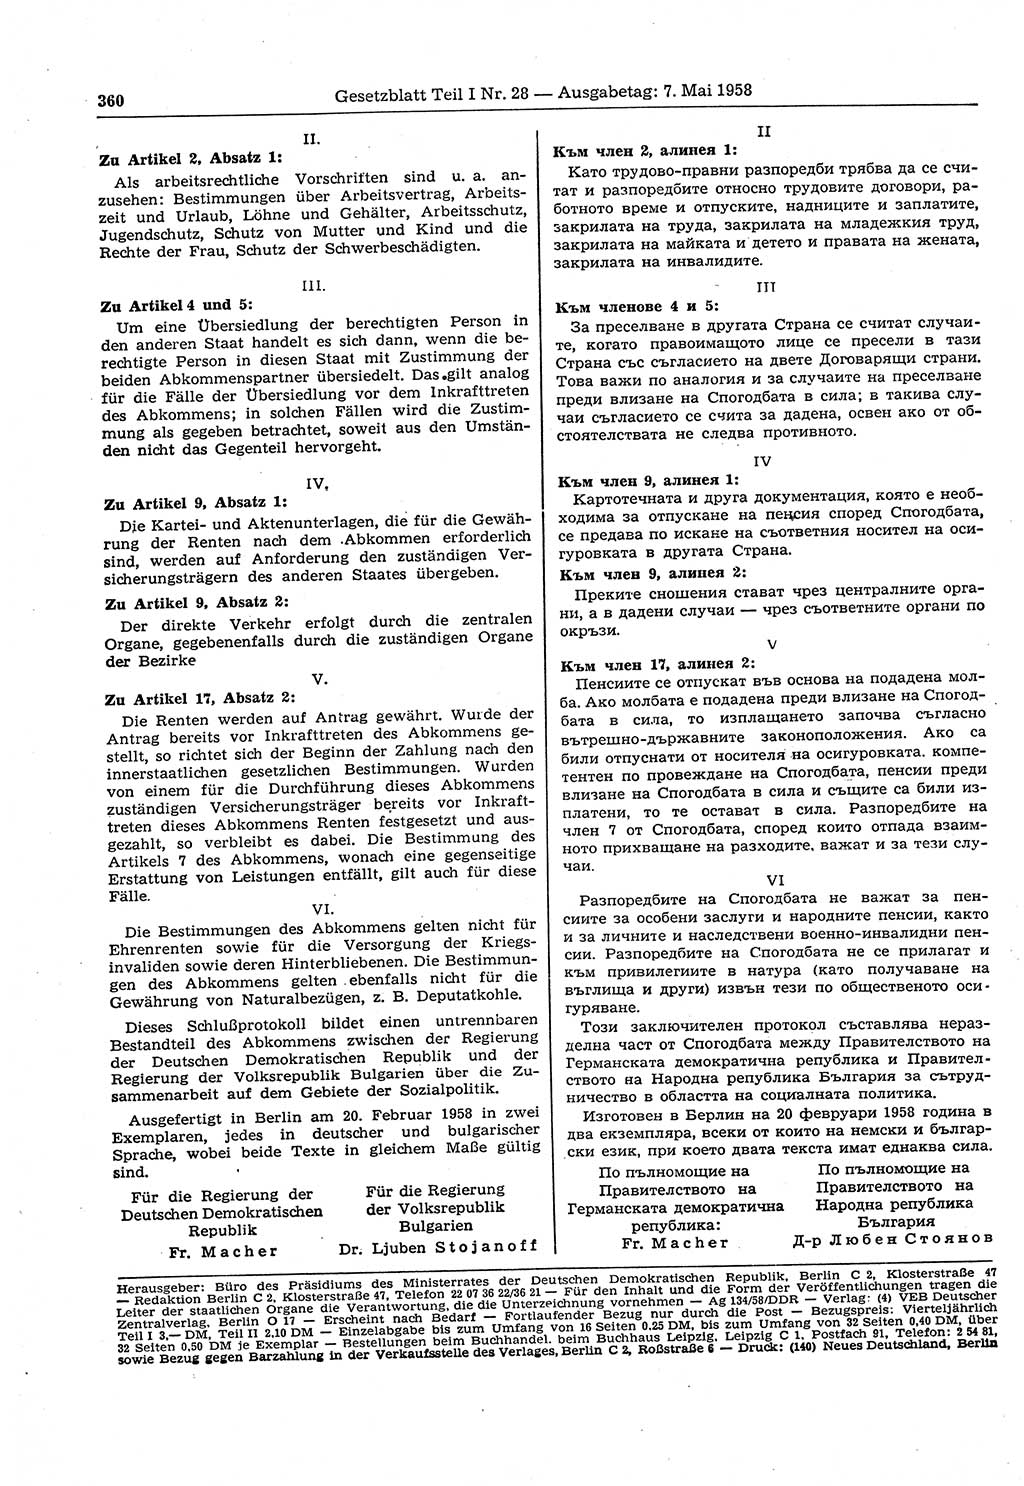 Gesetzblatt (GBl.) der Deutschen Demokratischen Republik (DDR) Teil Ⅰ 1958, Seite 360 (GBl. DDR Ⅰ 1958, S. 360)